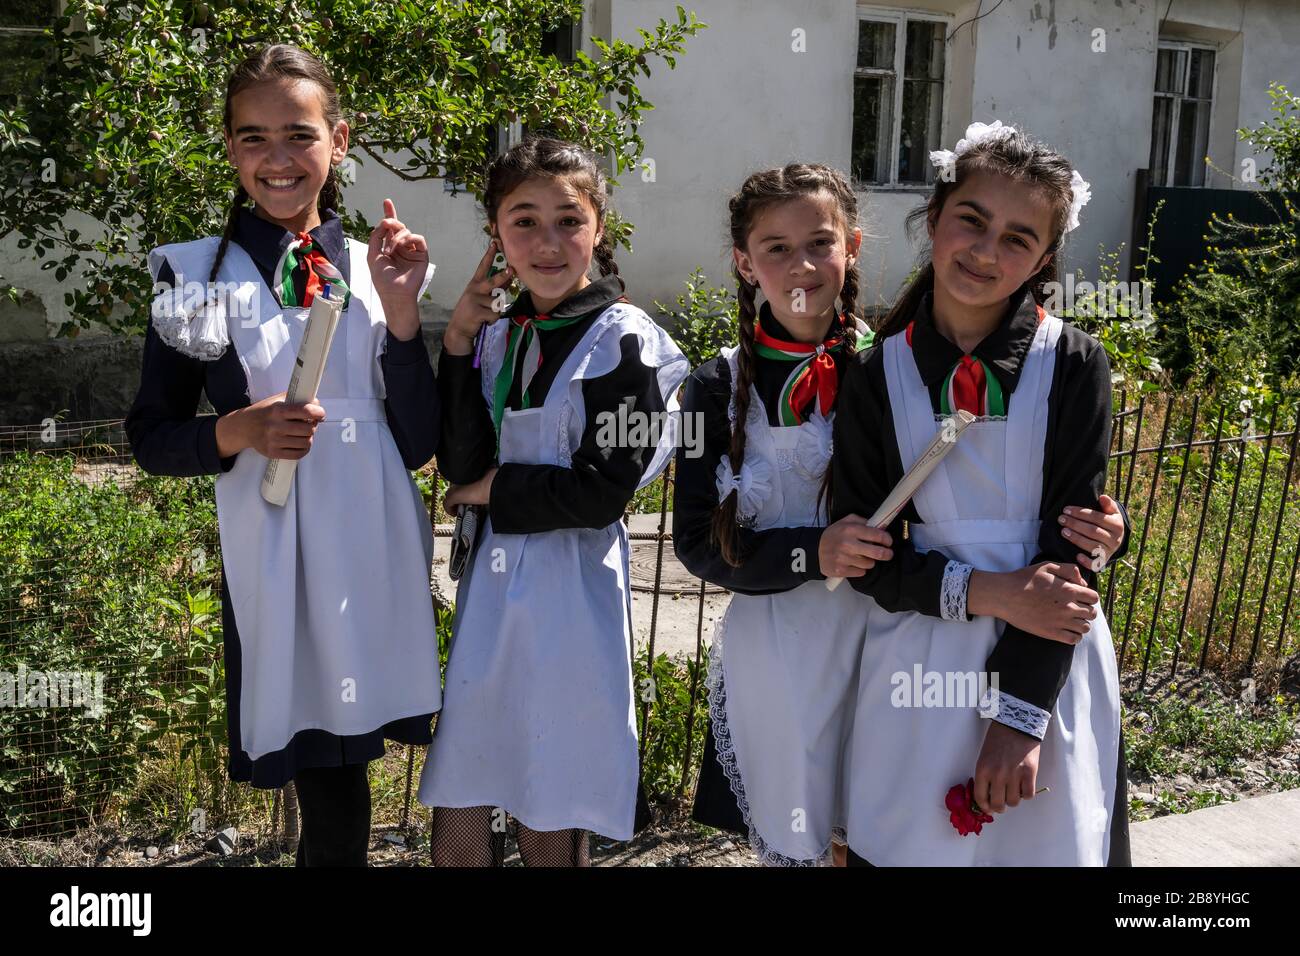 Rushon, Tadschikistan - 17. Juni 2020: Vier Schulkinder, Mädchen, in Schultracht vor der Schule am Pamir-Highway in Tadschikistan. Stockfoto